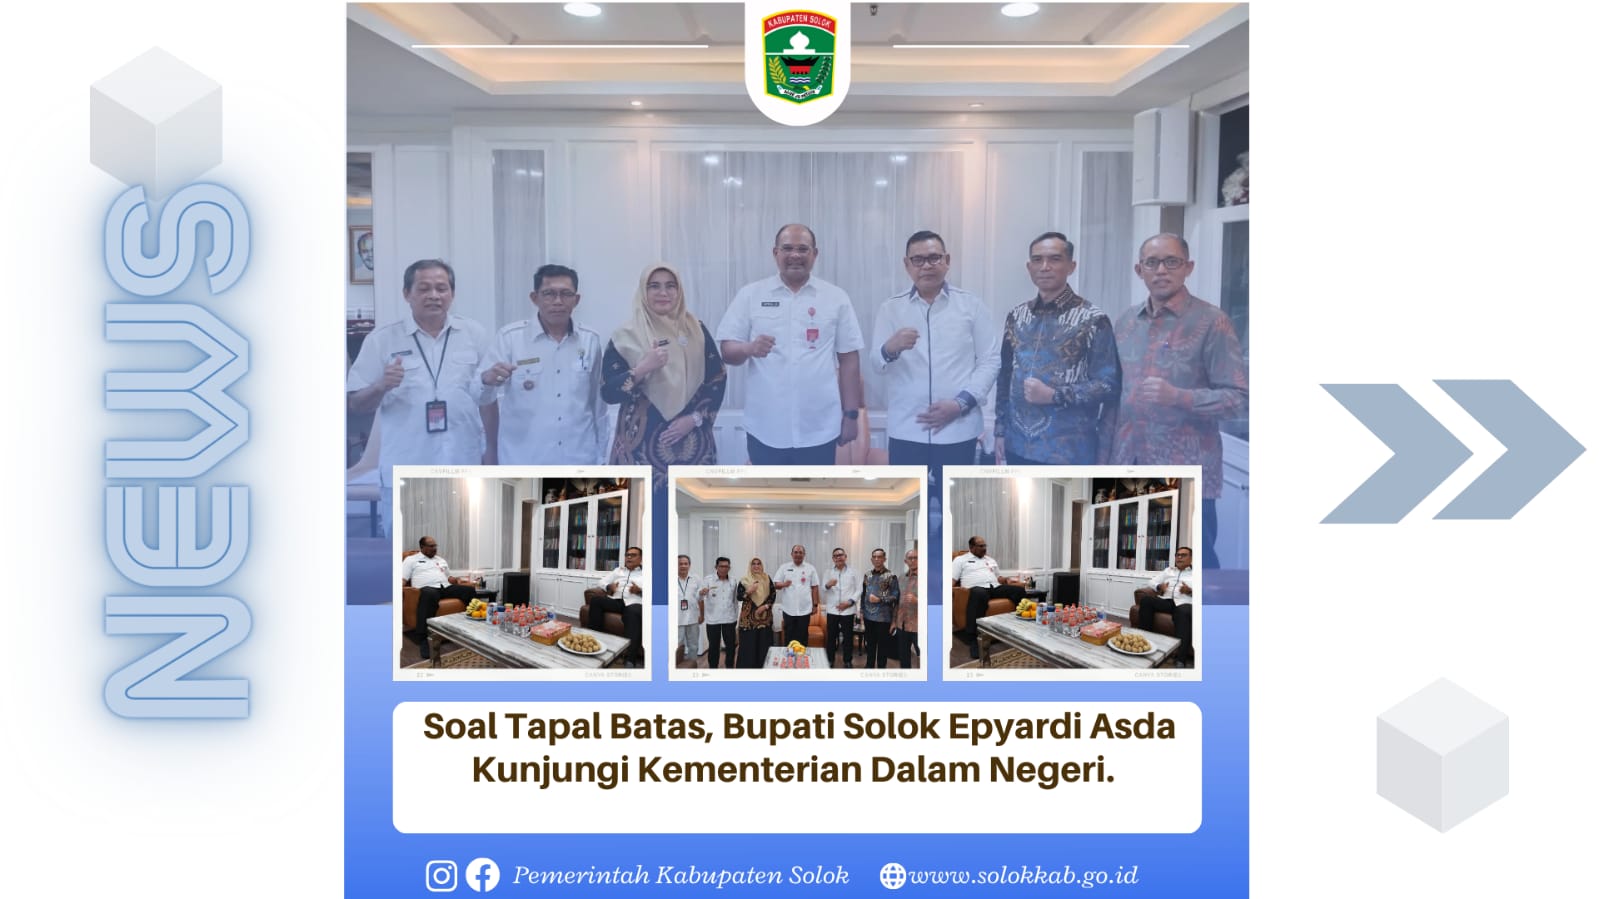 Soal Tapal Batas, Bupati Solok H. Epyardi Asda Kunjungi Kementerian Dalam Negeri.